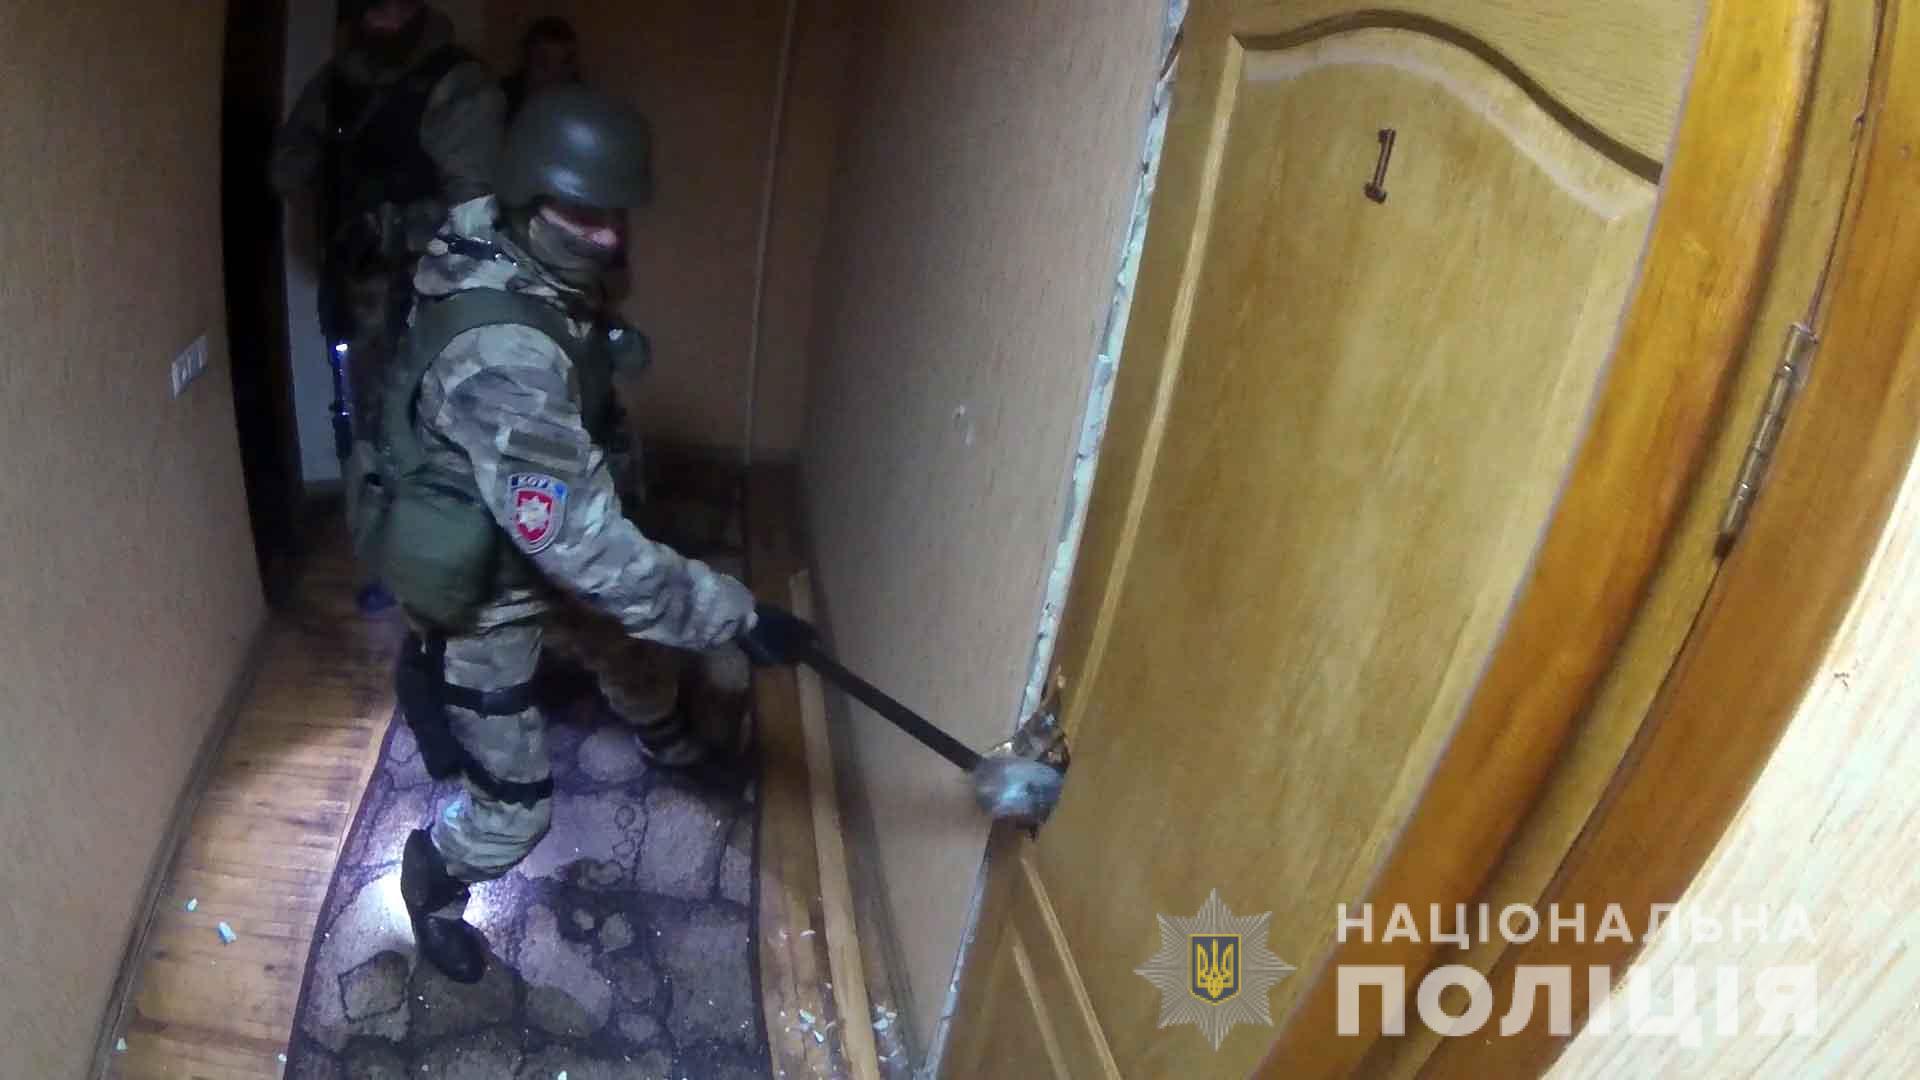 Винницкие полицейские разоблачили сутенера-иностранца, организовавшего публичный дом (Фото, видео)